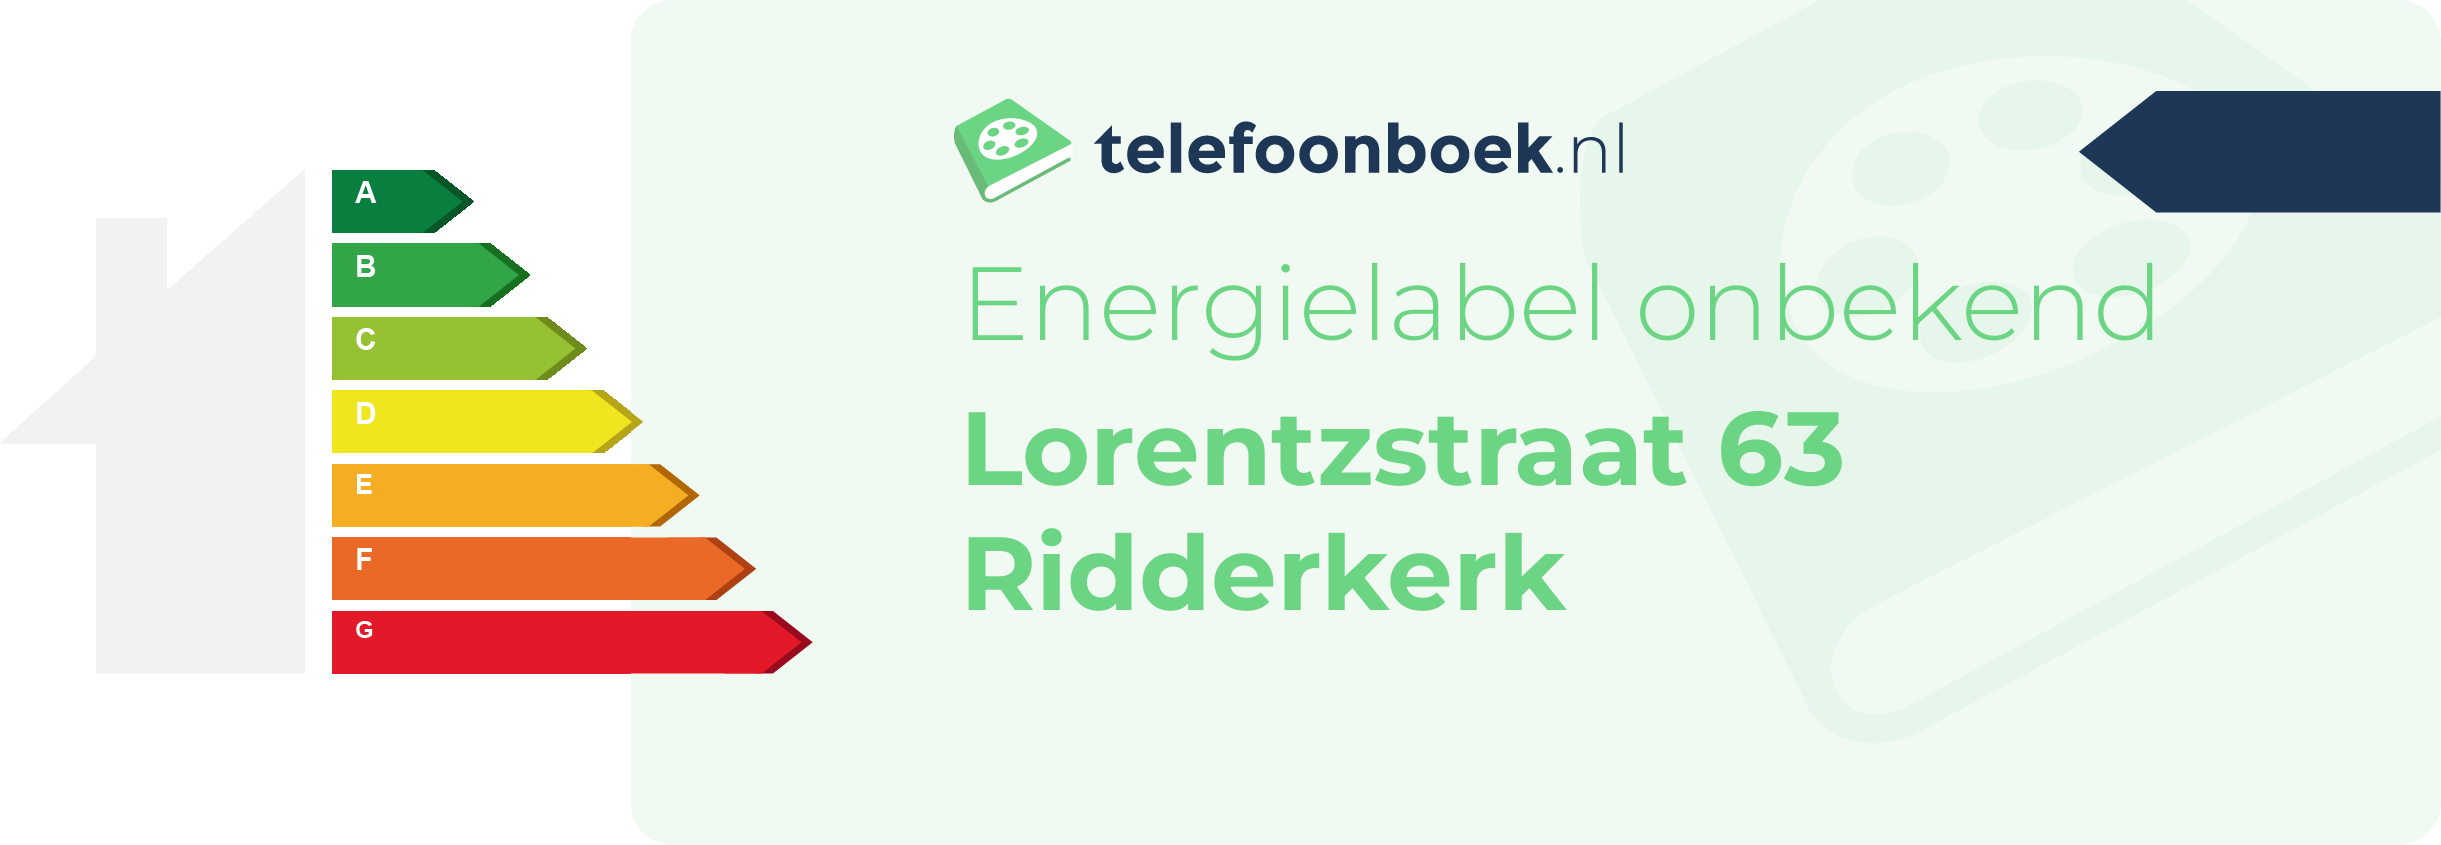 Energielabel Lorentzstraat 63 Ridderkerk